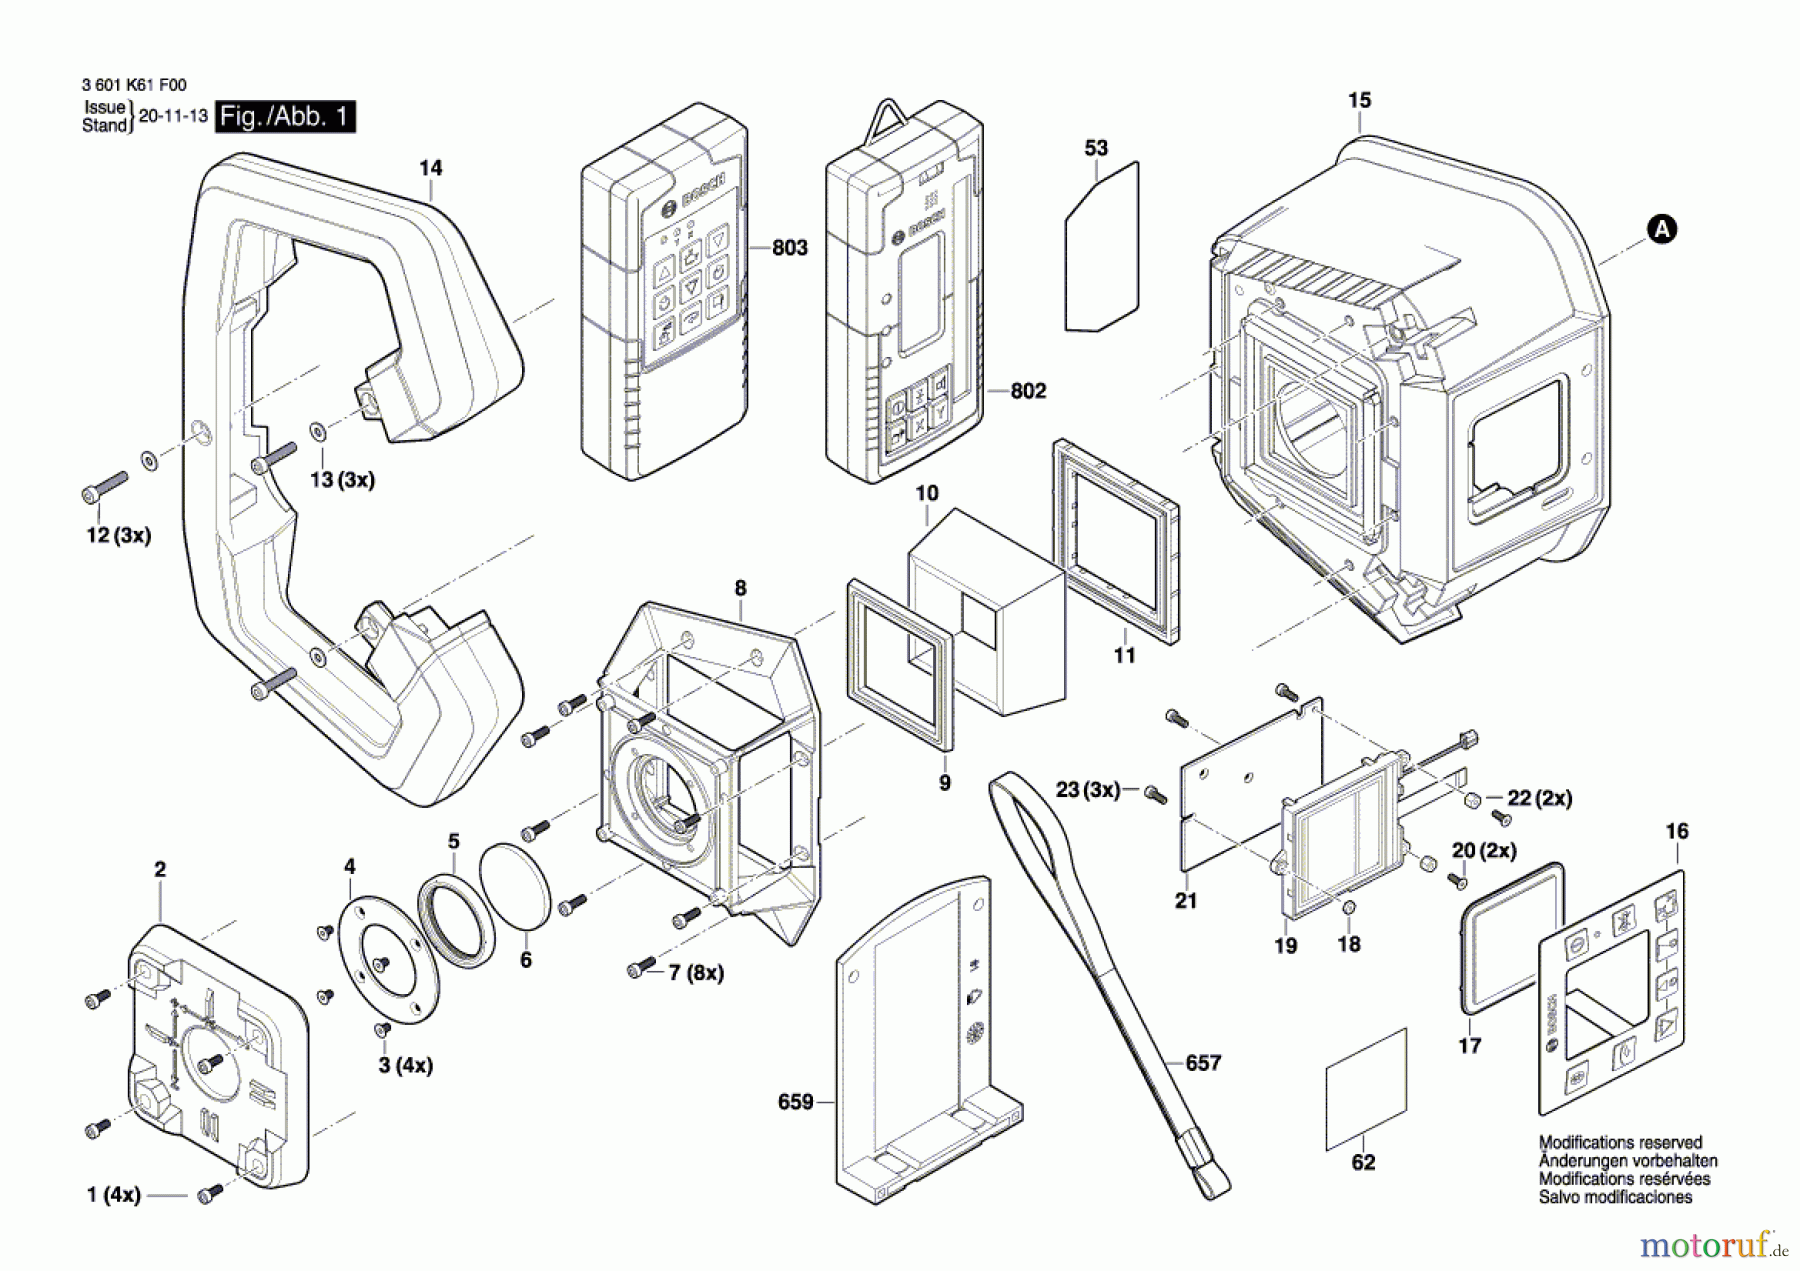  Bosch Werkzeug Baulaser GRL 600 CHV Seite 1